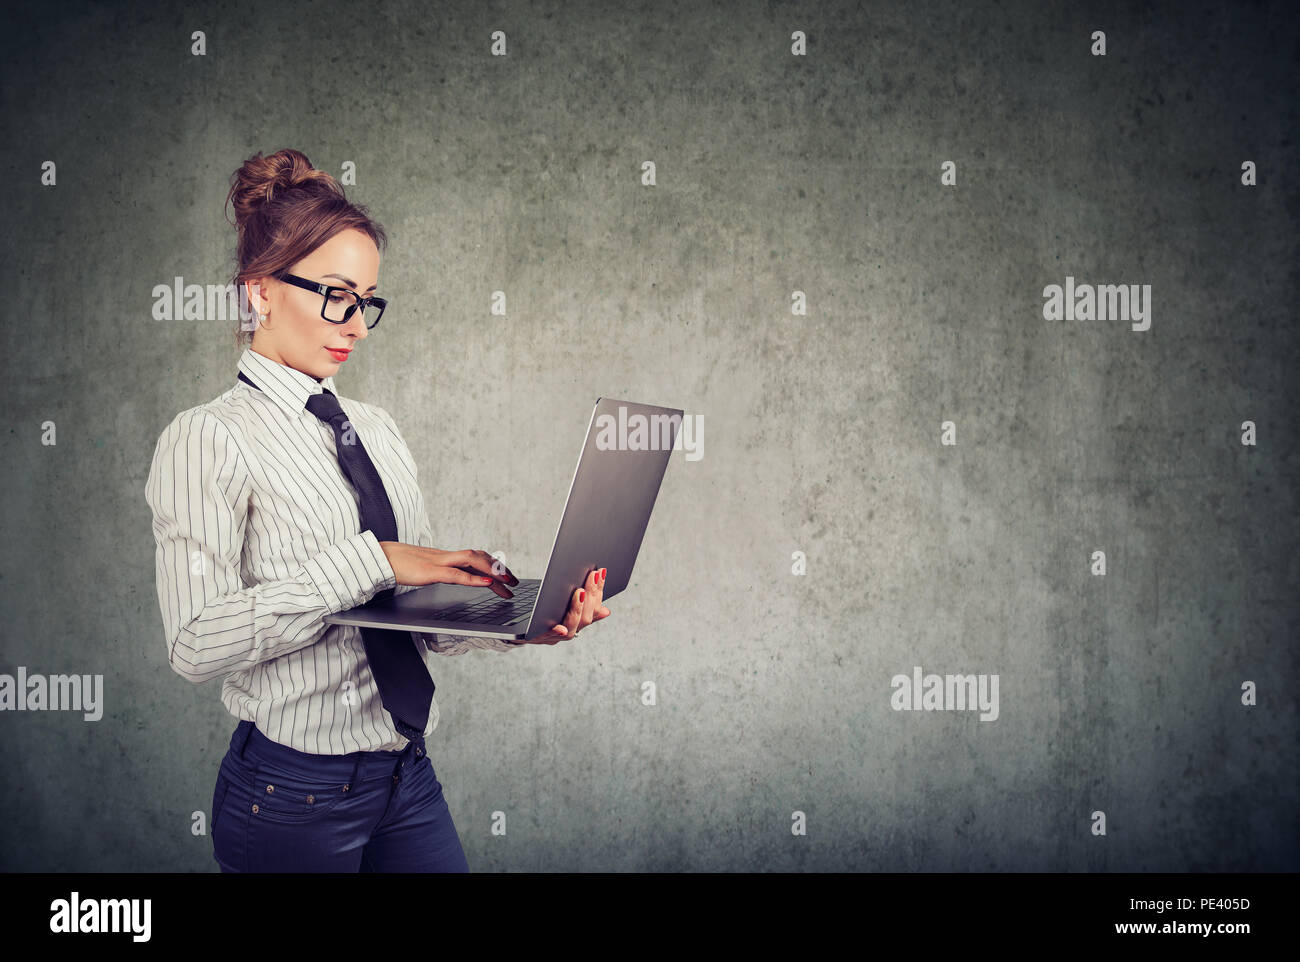 Professionelle Frau in formalen Outfit und Gläser mit Laptop und gegen graue Wand Hintergrund Stockfoto